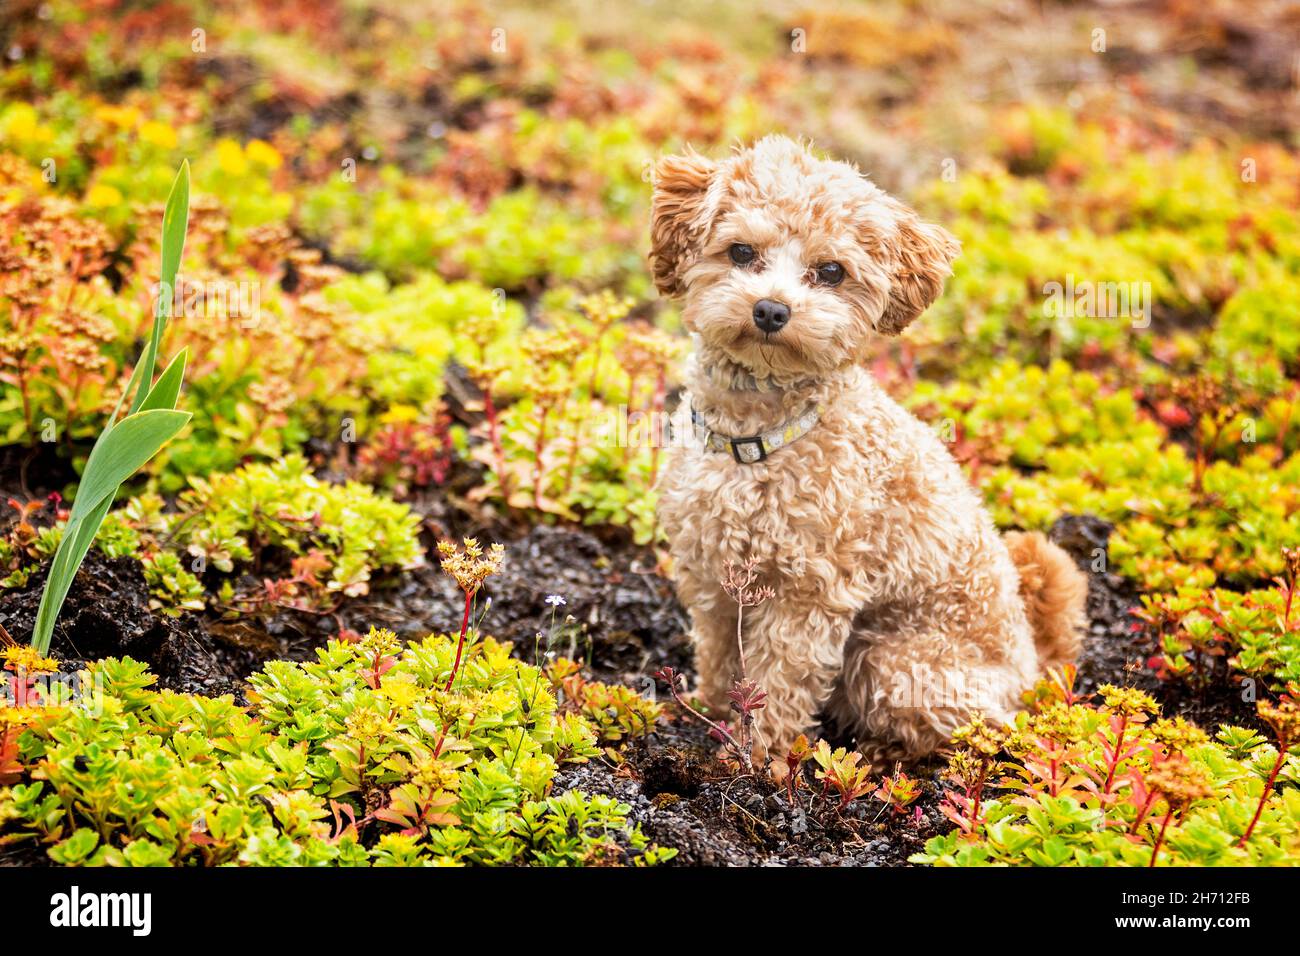 Toy Poodle. Adult dog sitting among cushion plants. Germany Stock Photo